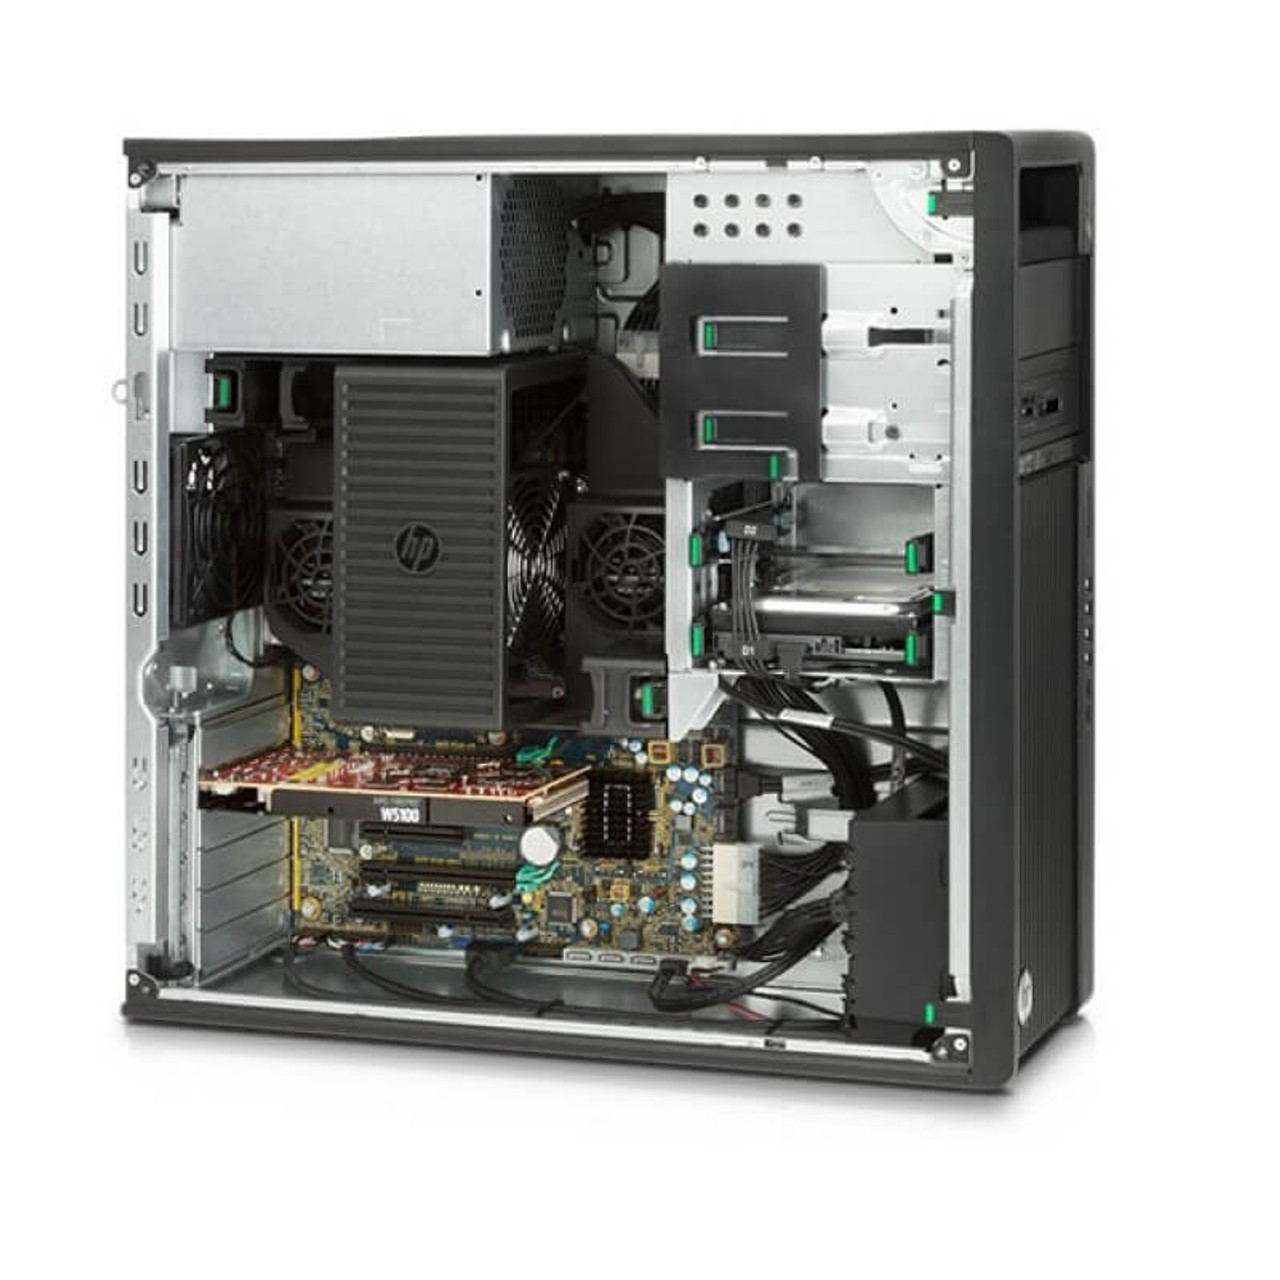 HP Z440 Workstation E5-1620 v3 Quad Core 3.5Ghz 32GB 500GB SSD HDMI Win 10